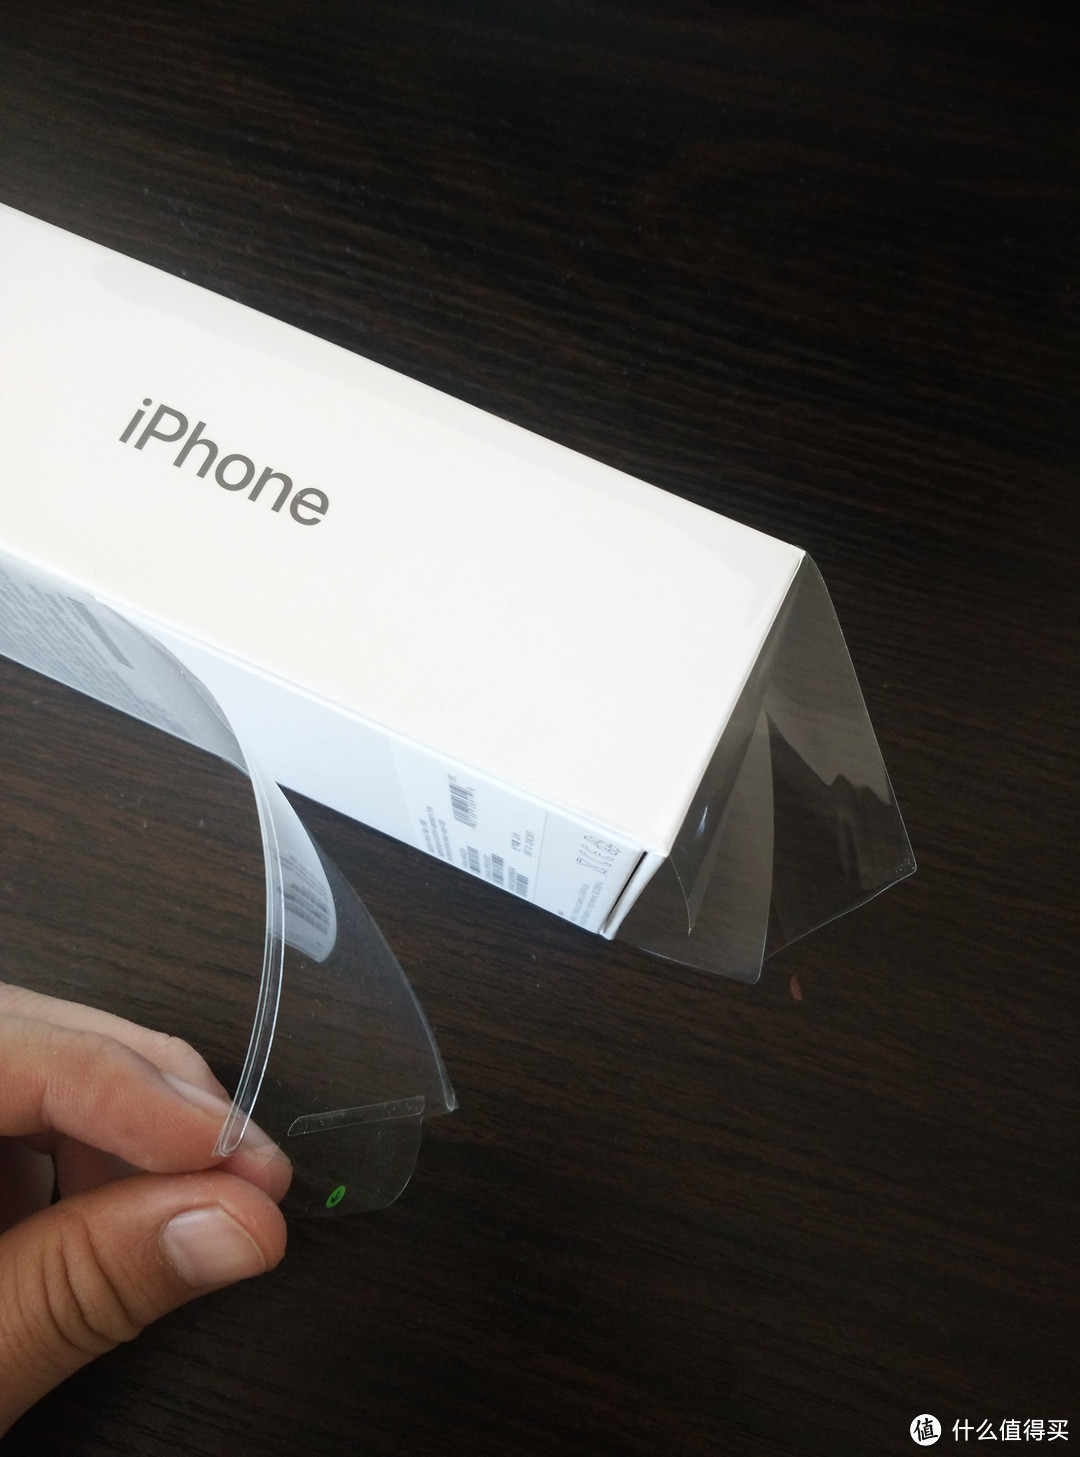 阵营转换之安卓转iOS： Apple 苹果 iPhone 7 128G黑色 智能手机 晒物及软件分享